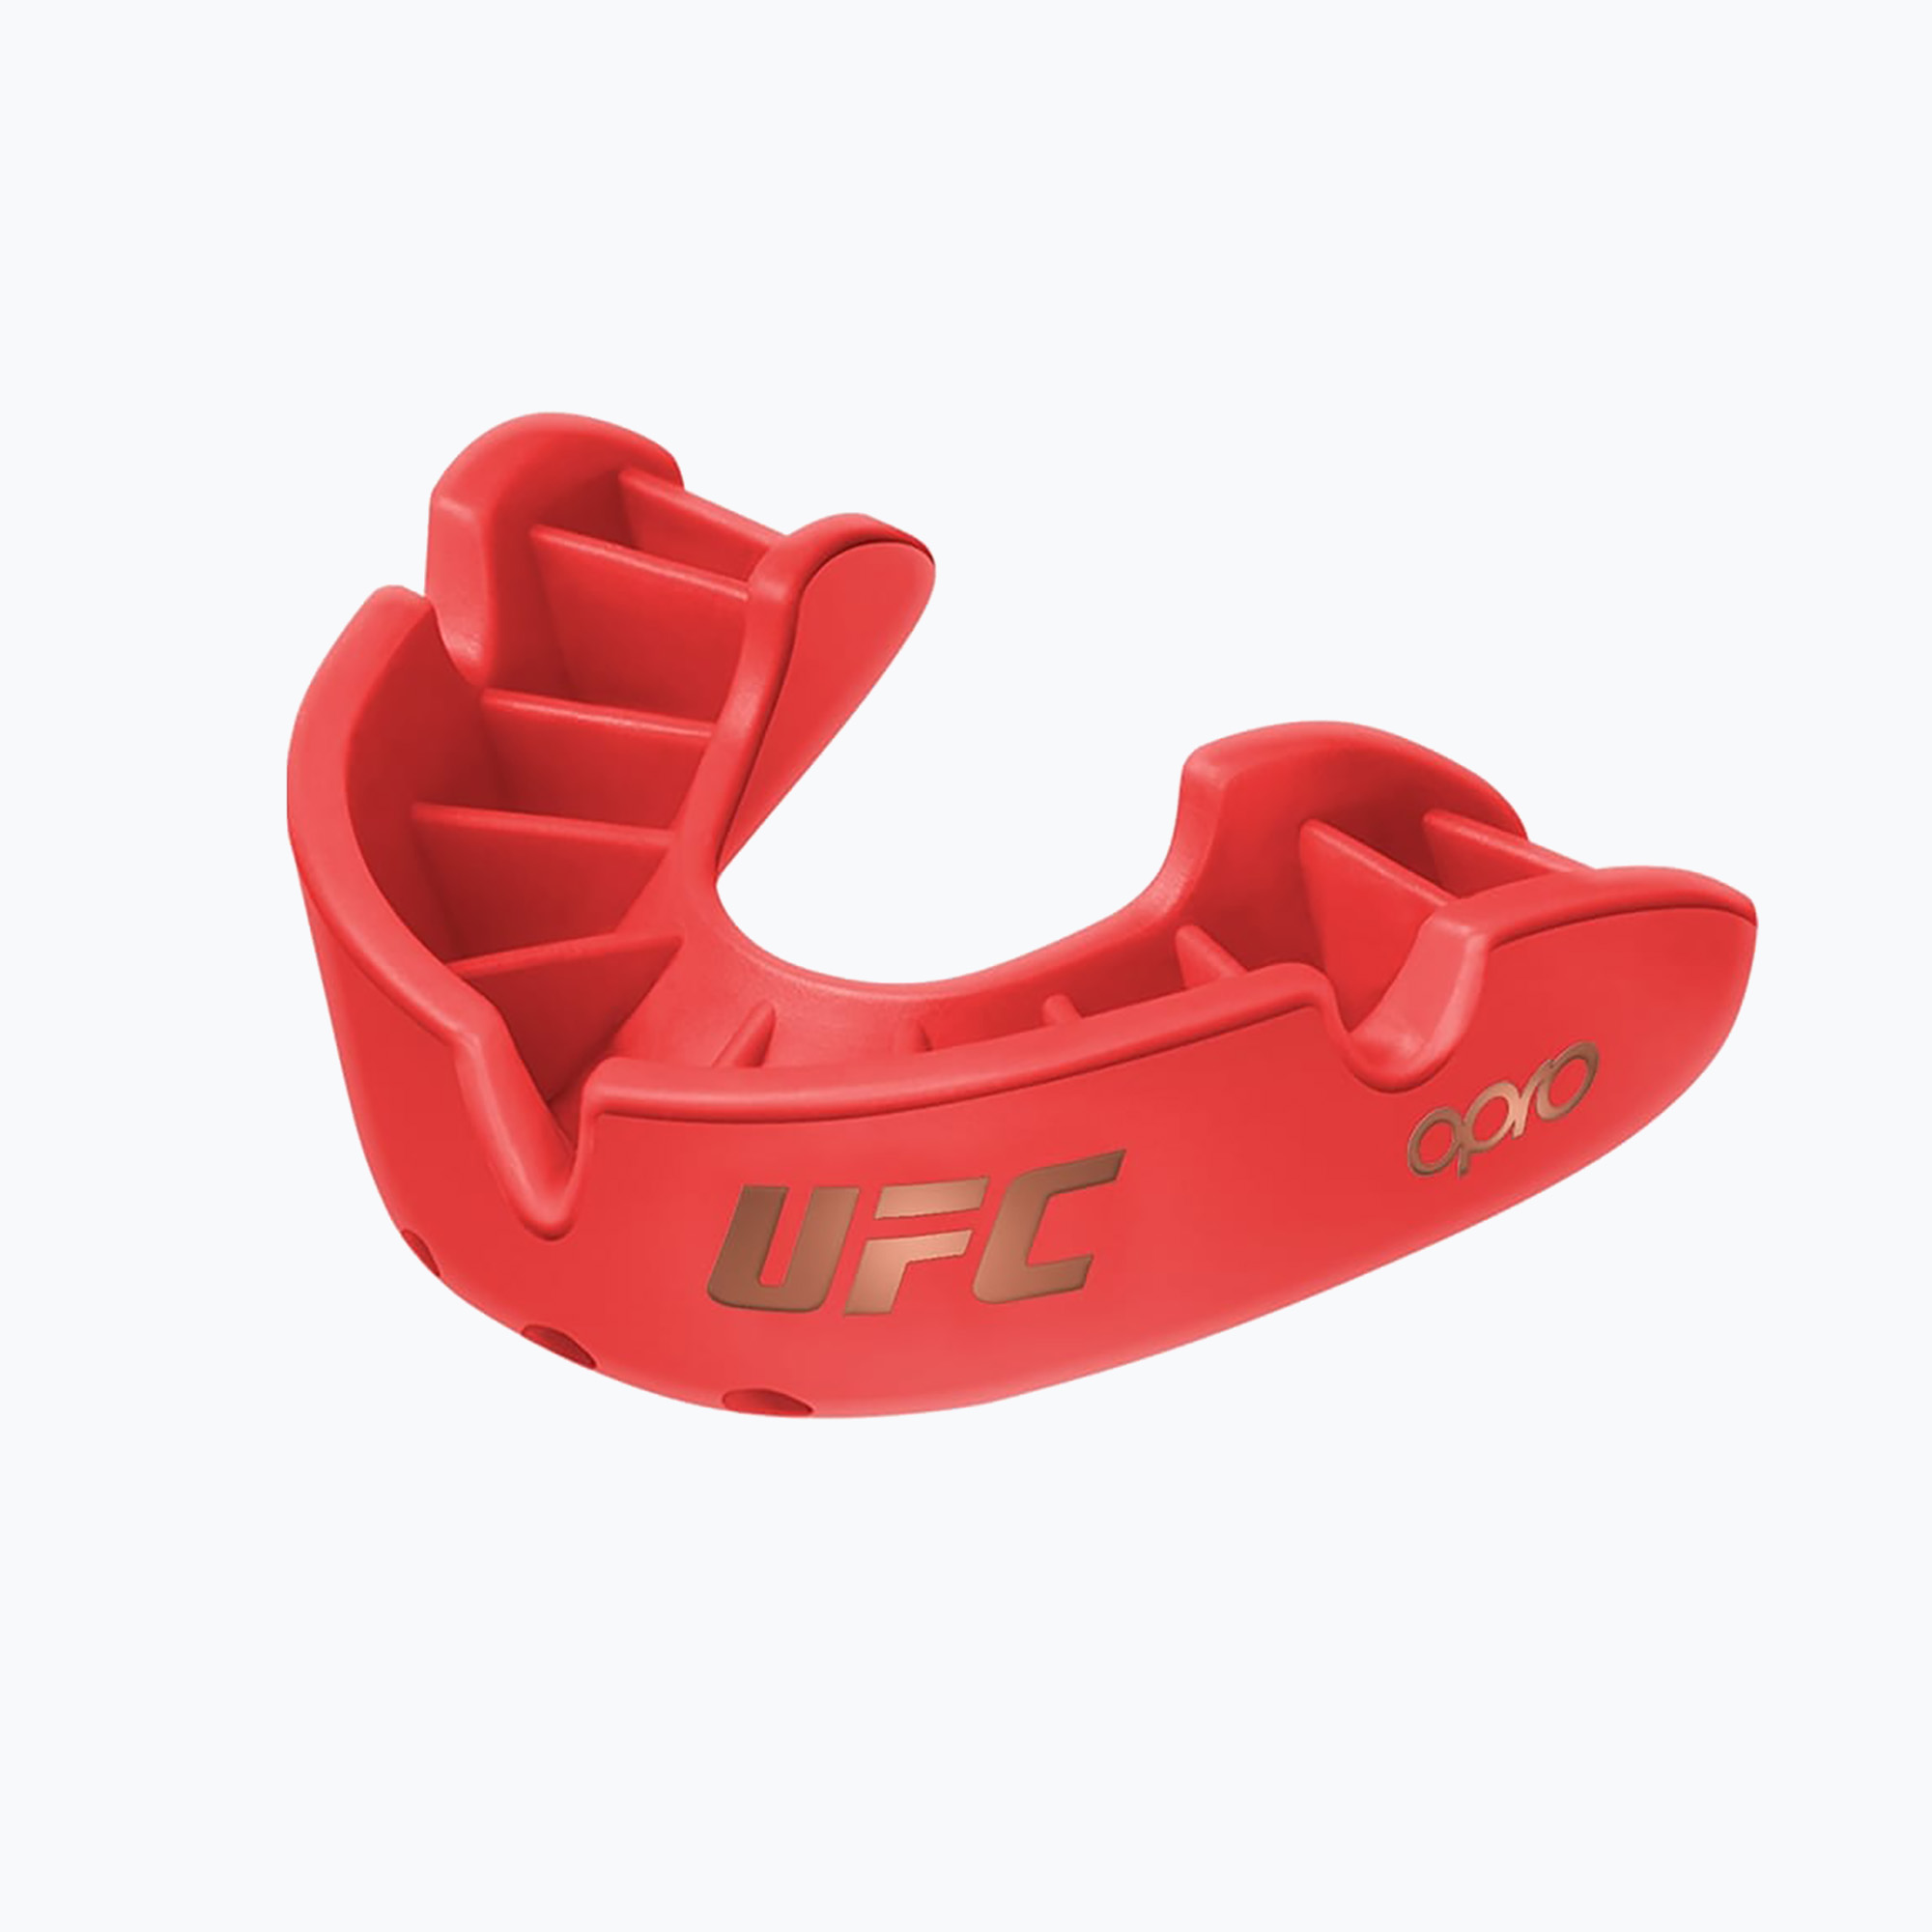 Protector de maxilar Opro UFC Bronze GEN2 roșu